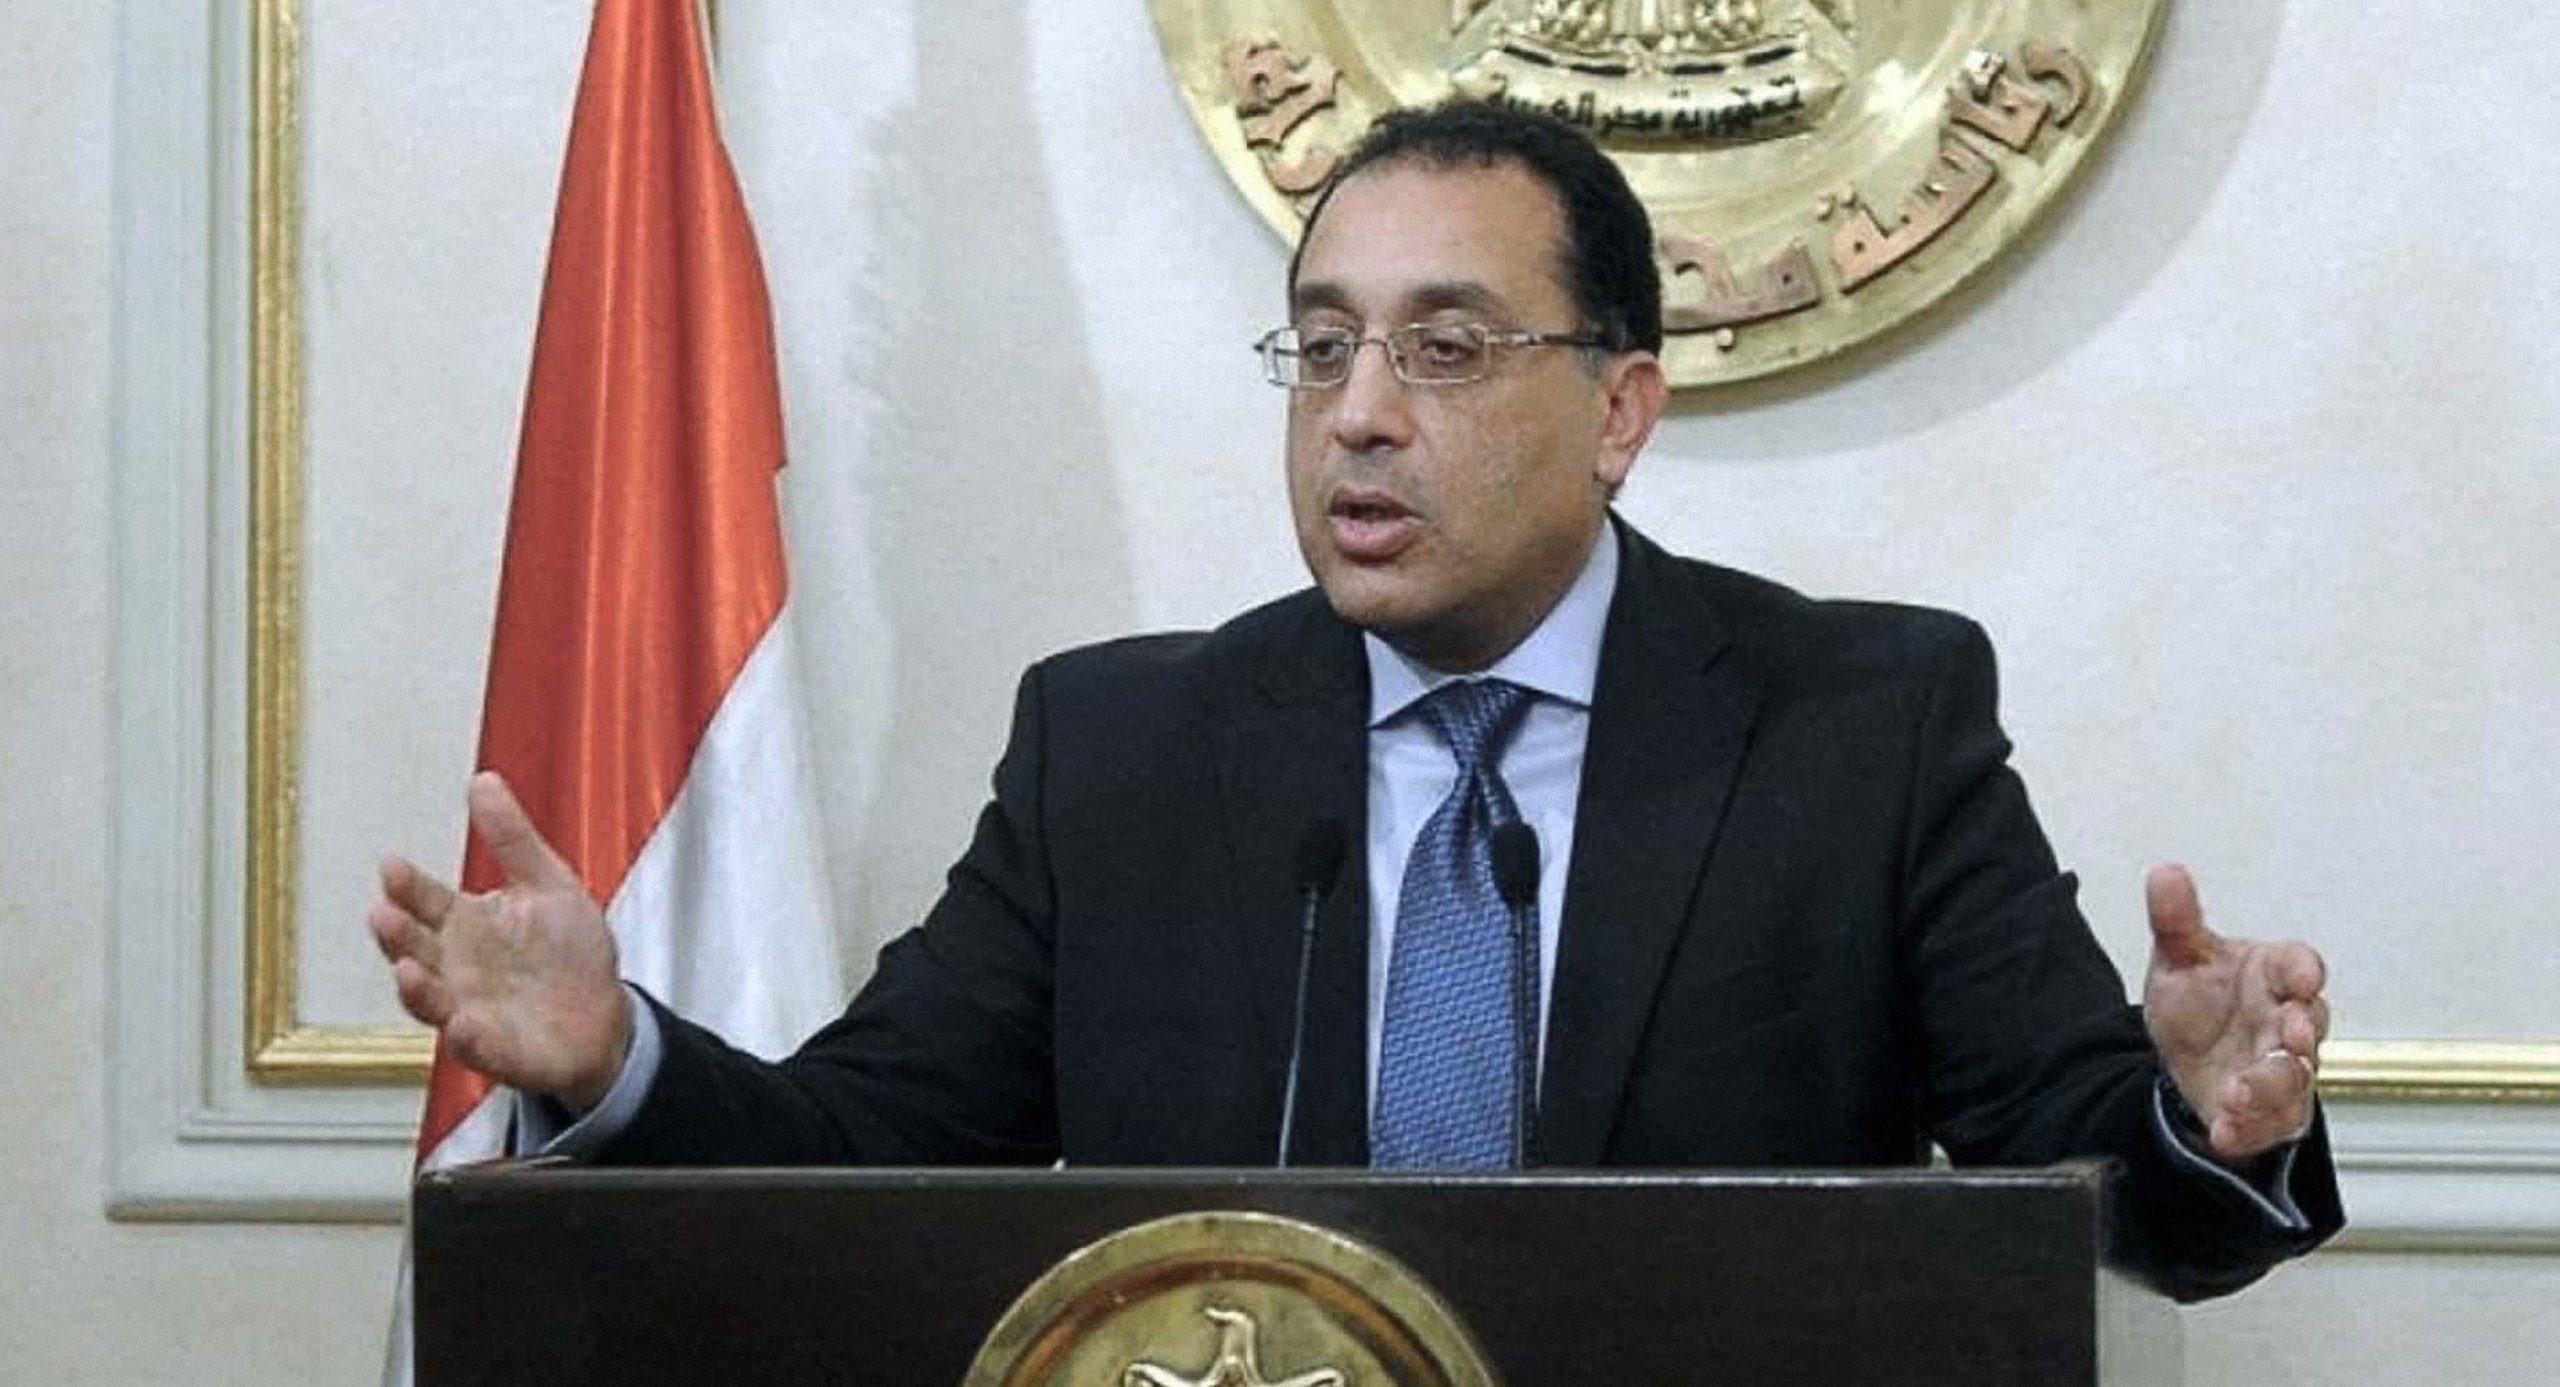 صورة الحكومة المصرية للأطباء: كيف ستتعلمون عن الفيروس ما لم تصابوا به؟